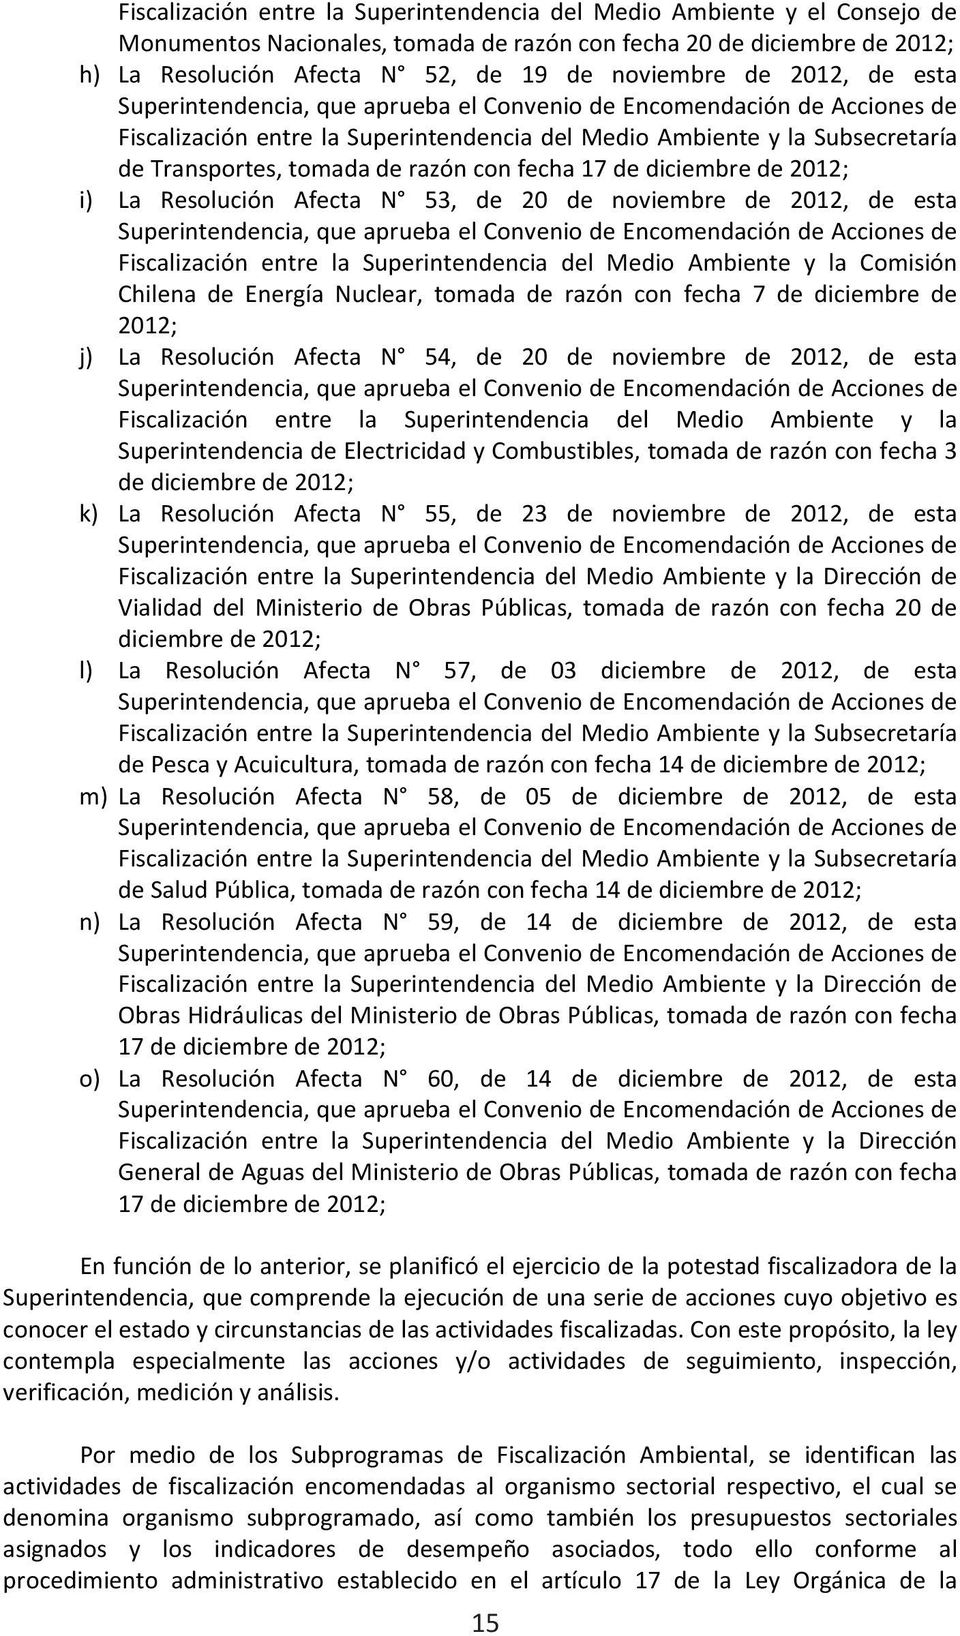 La Resolución Afecta N 53, de 20 de noviembre de 2012, de esta Superintendencia,queapruebaelConveniodeEncomendacióndeAccionesde Fiscalización entre la Superintendencia del Medio Ambiente y la